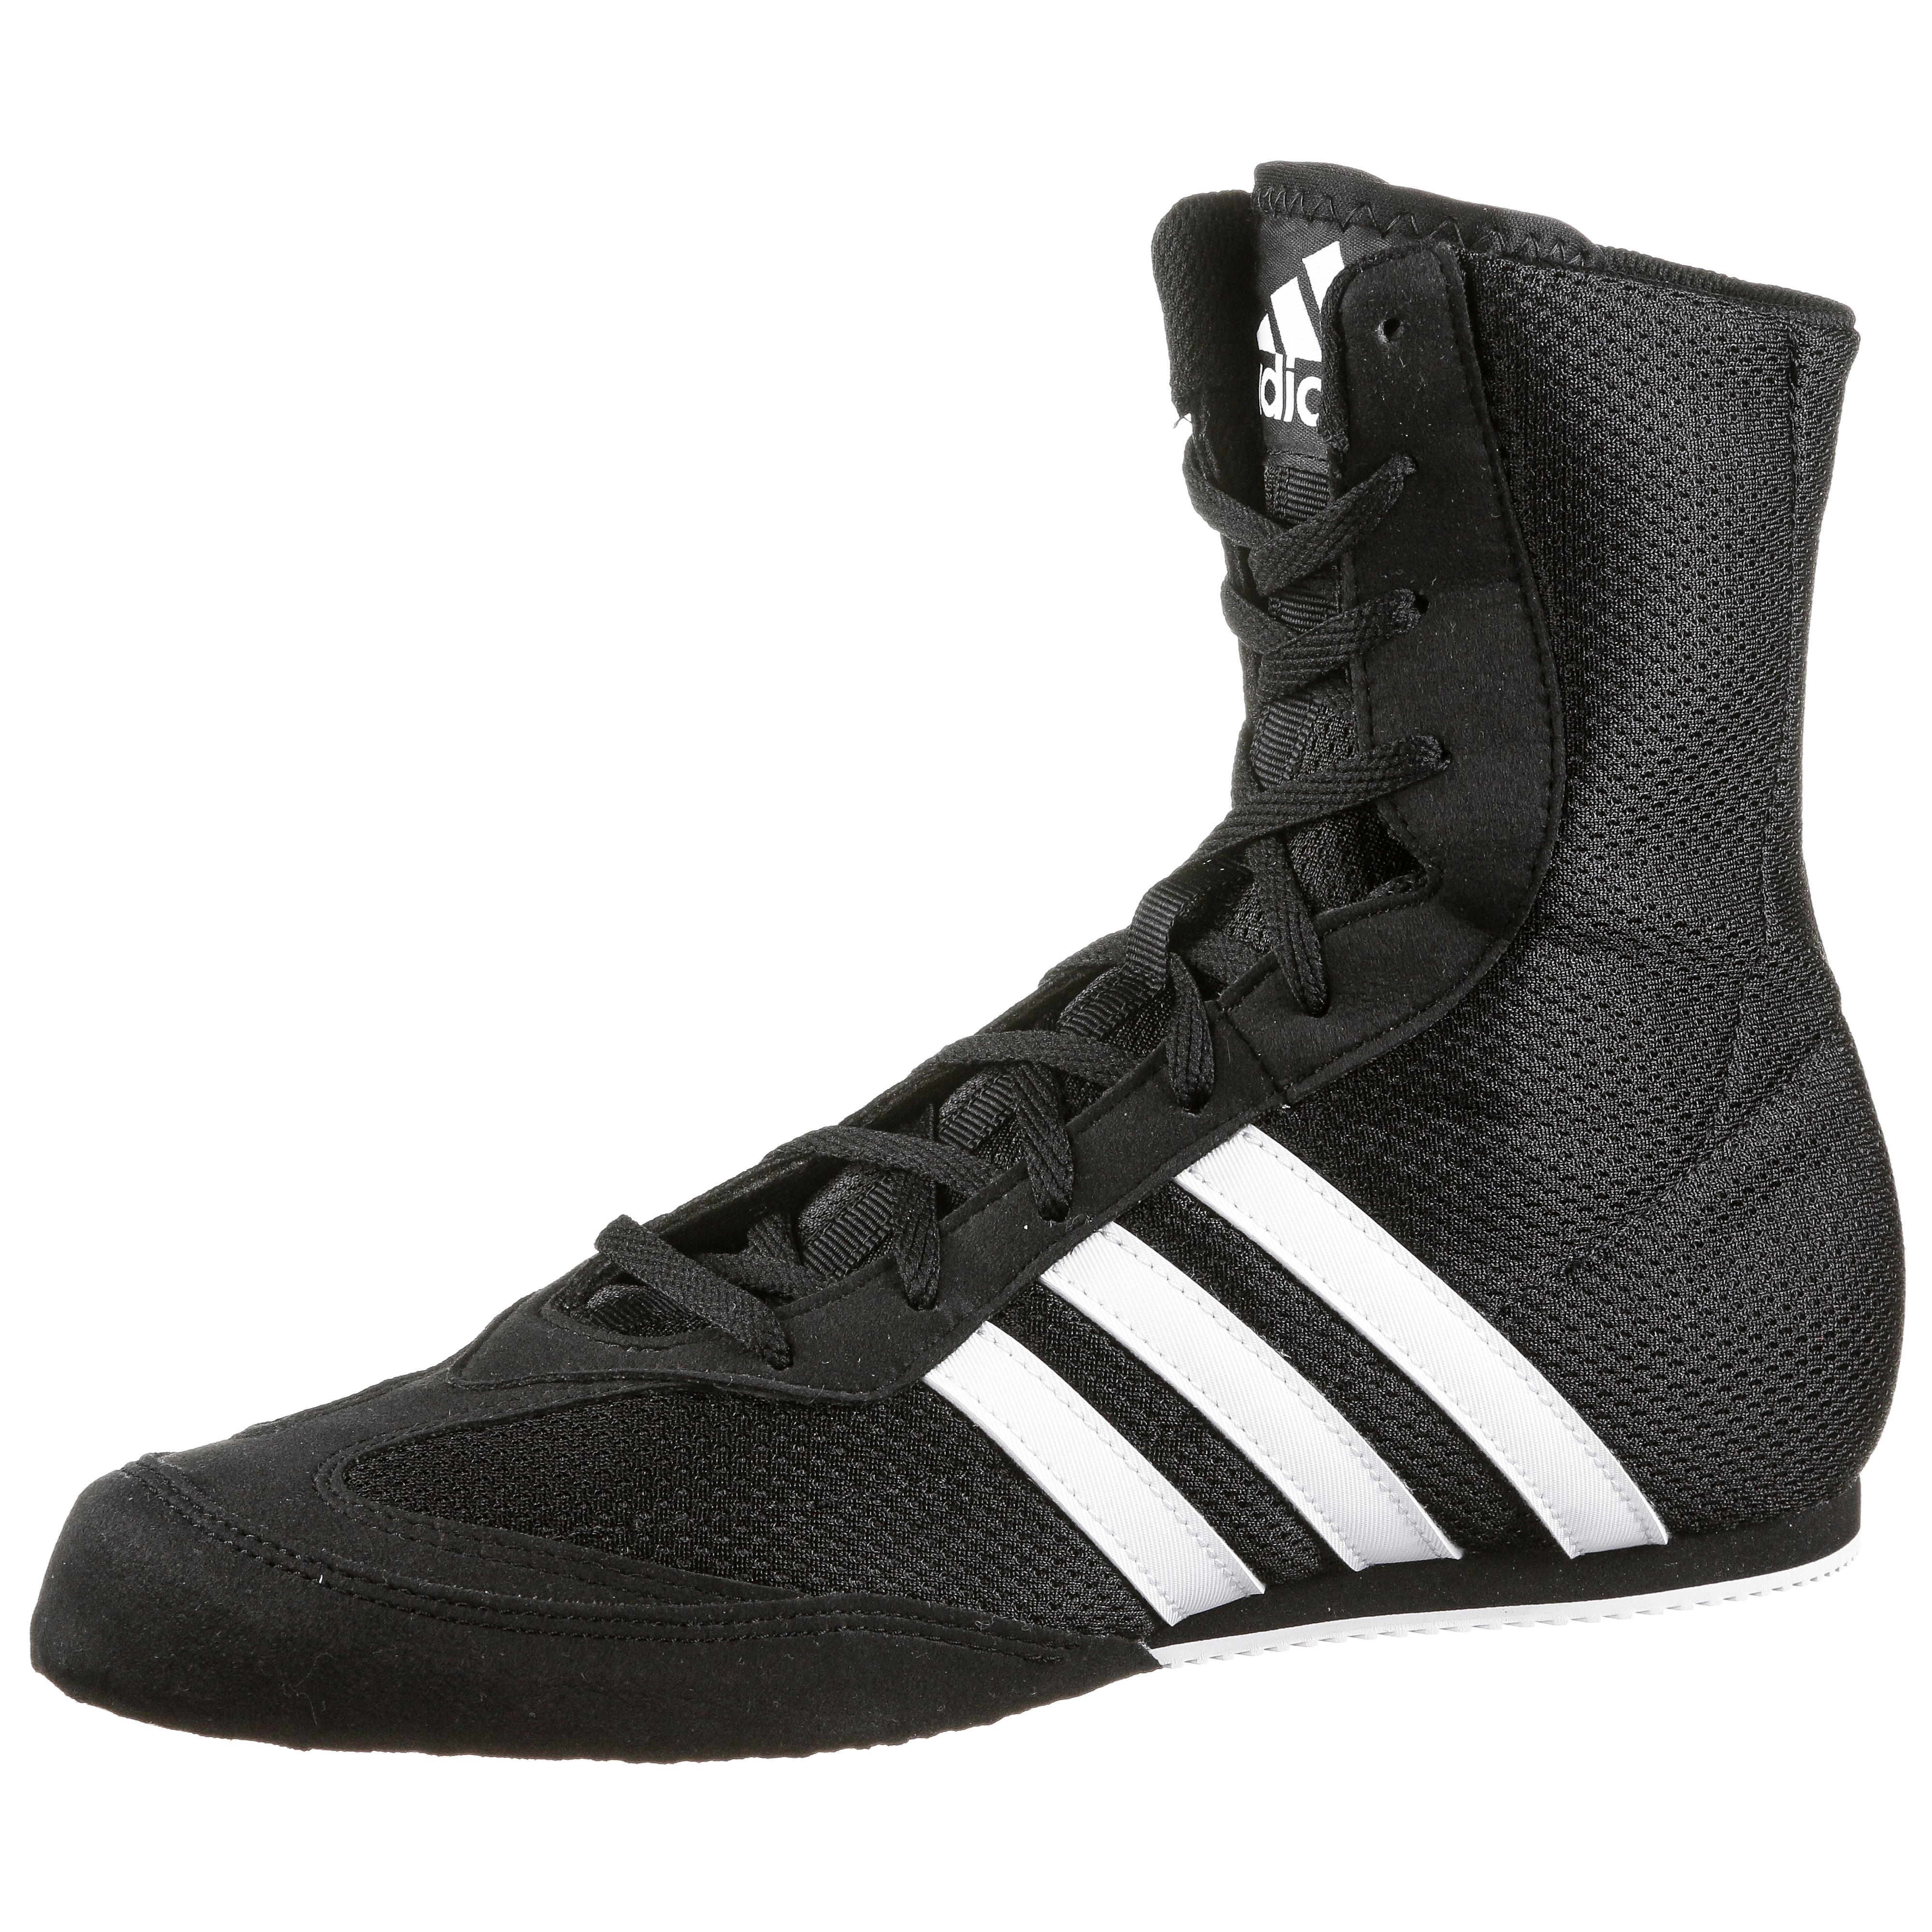 Adidas Boxschuhe schwarz im Online Shop von SportScheck kaufen